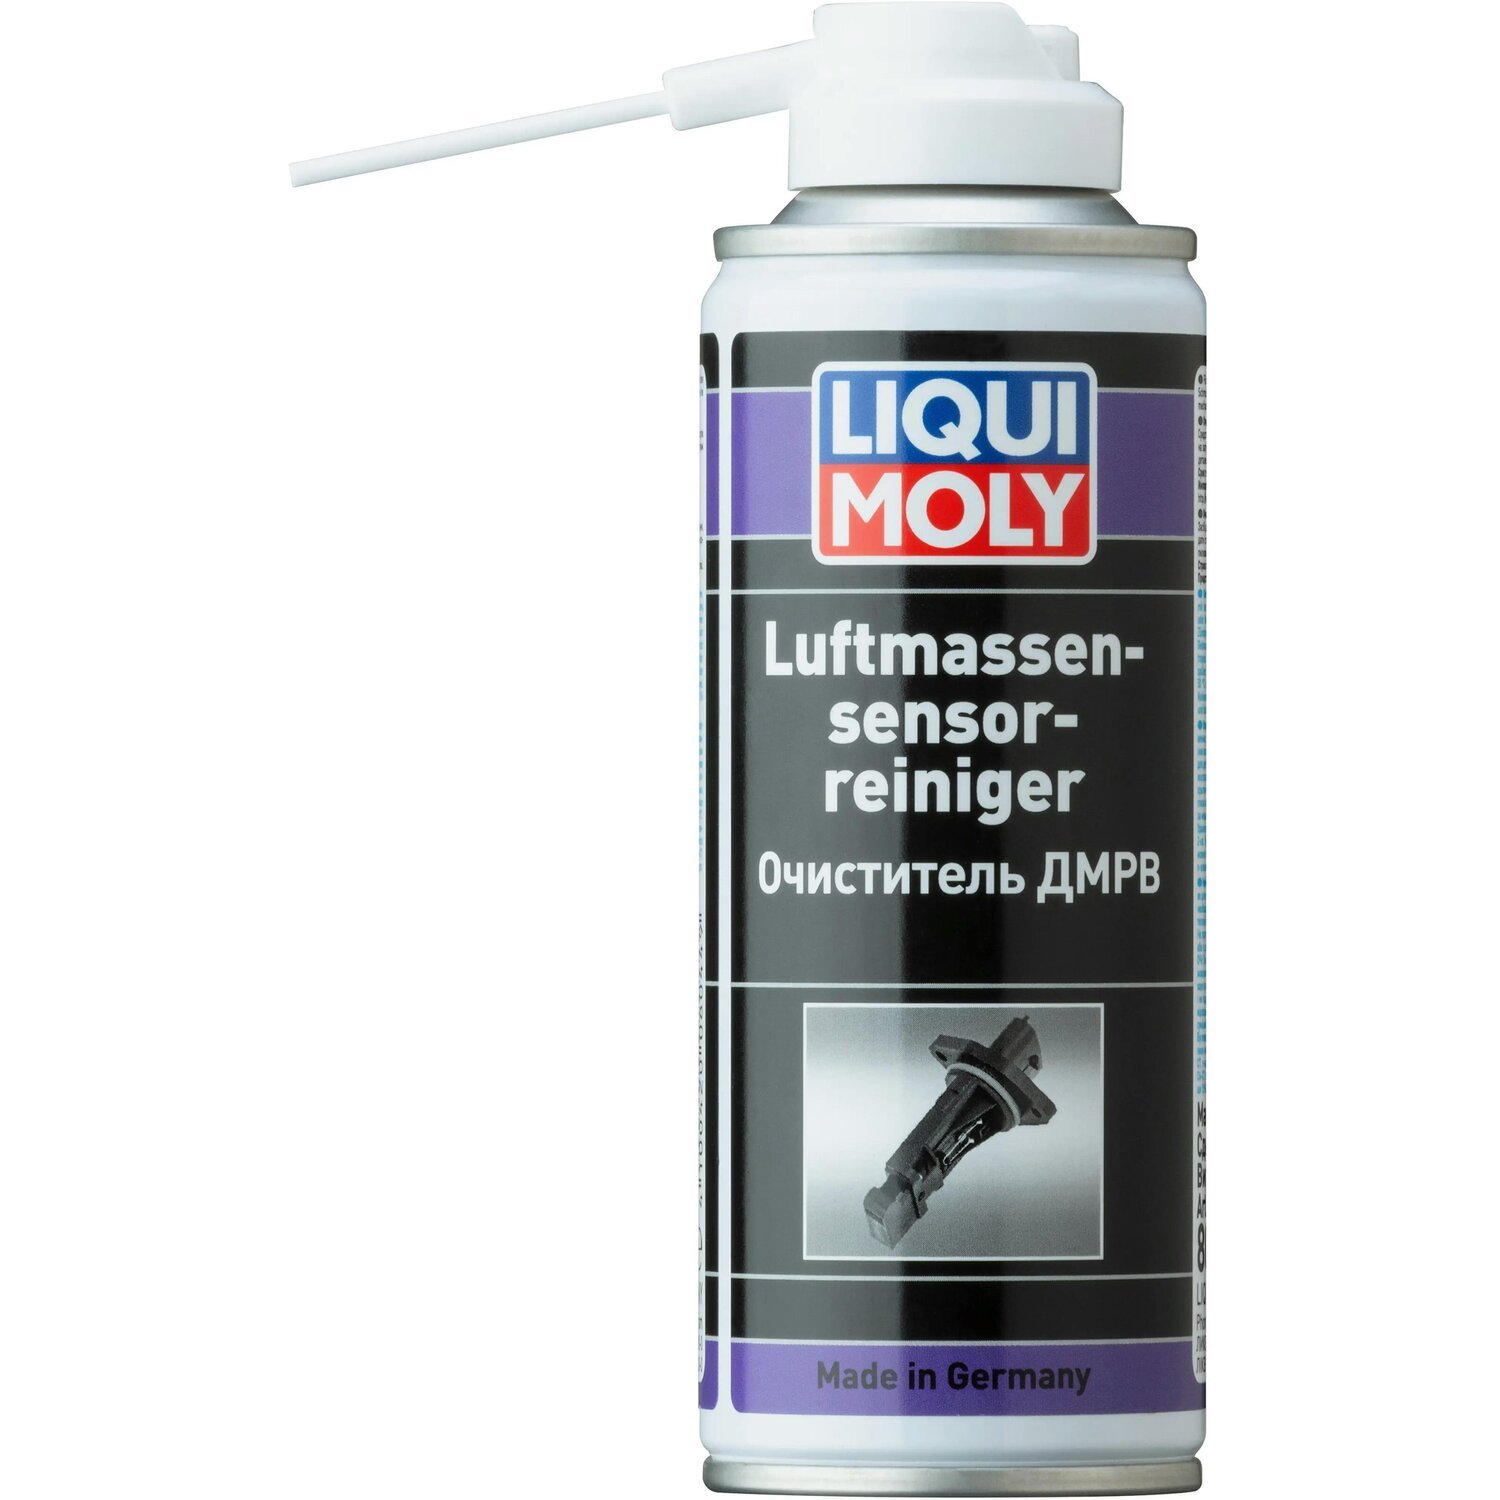 Очисник Liqui Moly для ДМРВ Luftmassensensor-Reiniger 0,2 л (4100420080449)фото